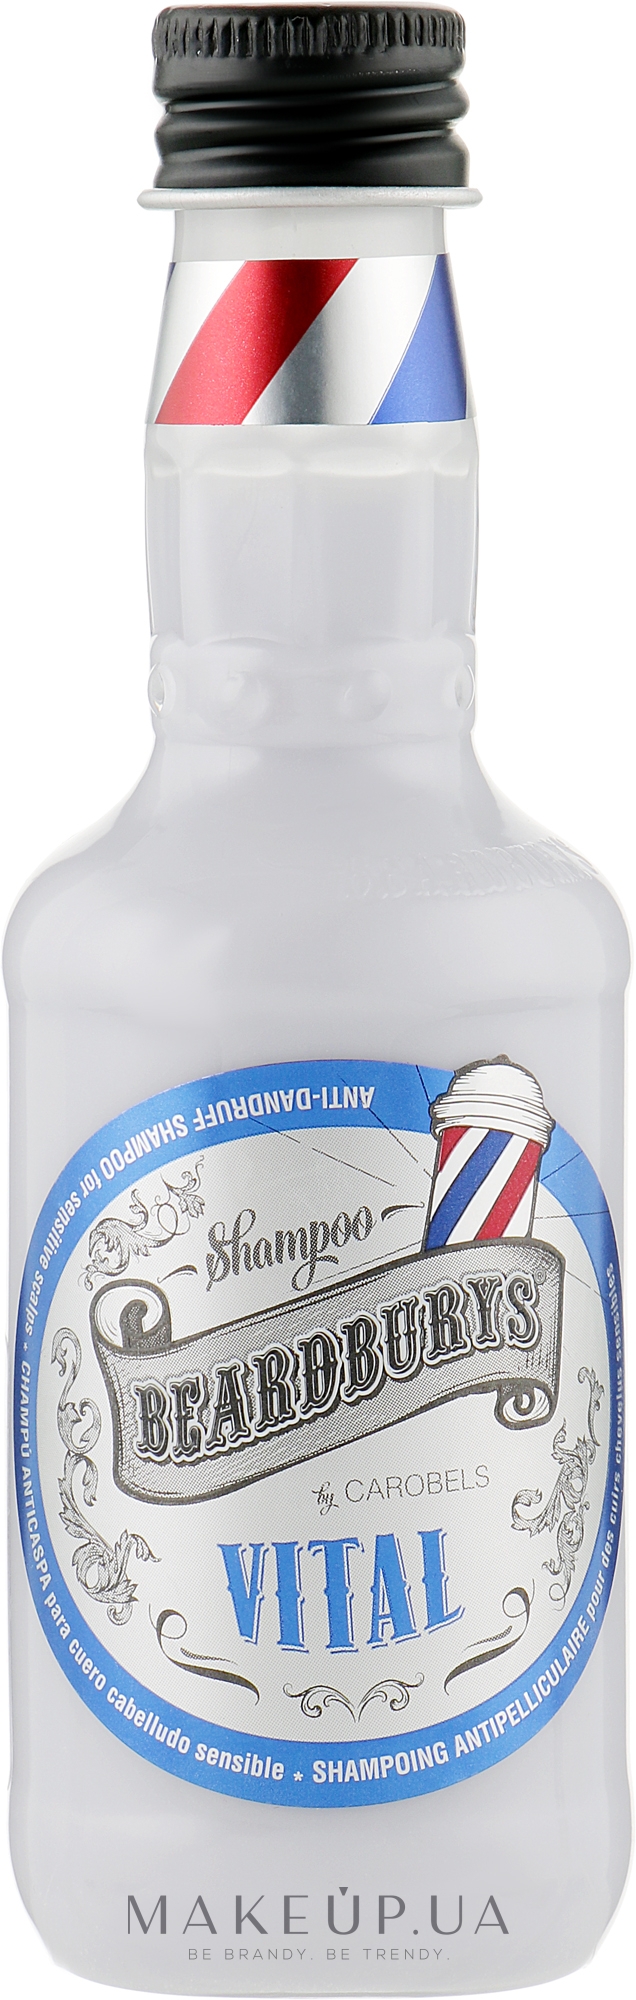 Шампунь против перхоти с эффектом пилинга - Beardburys Vital Shampoo — фото 100ml